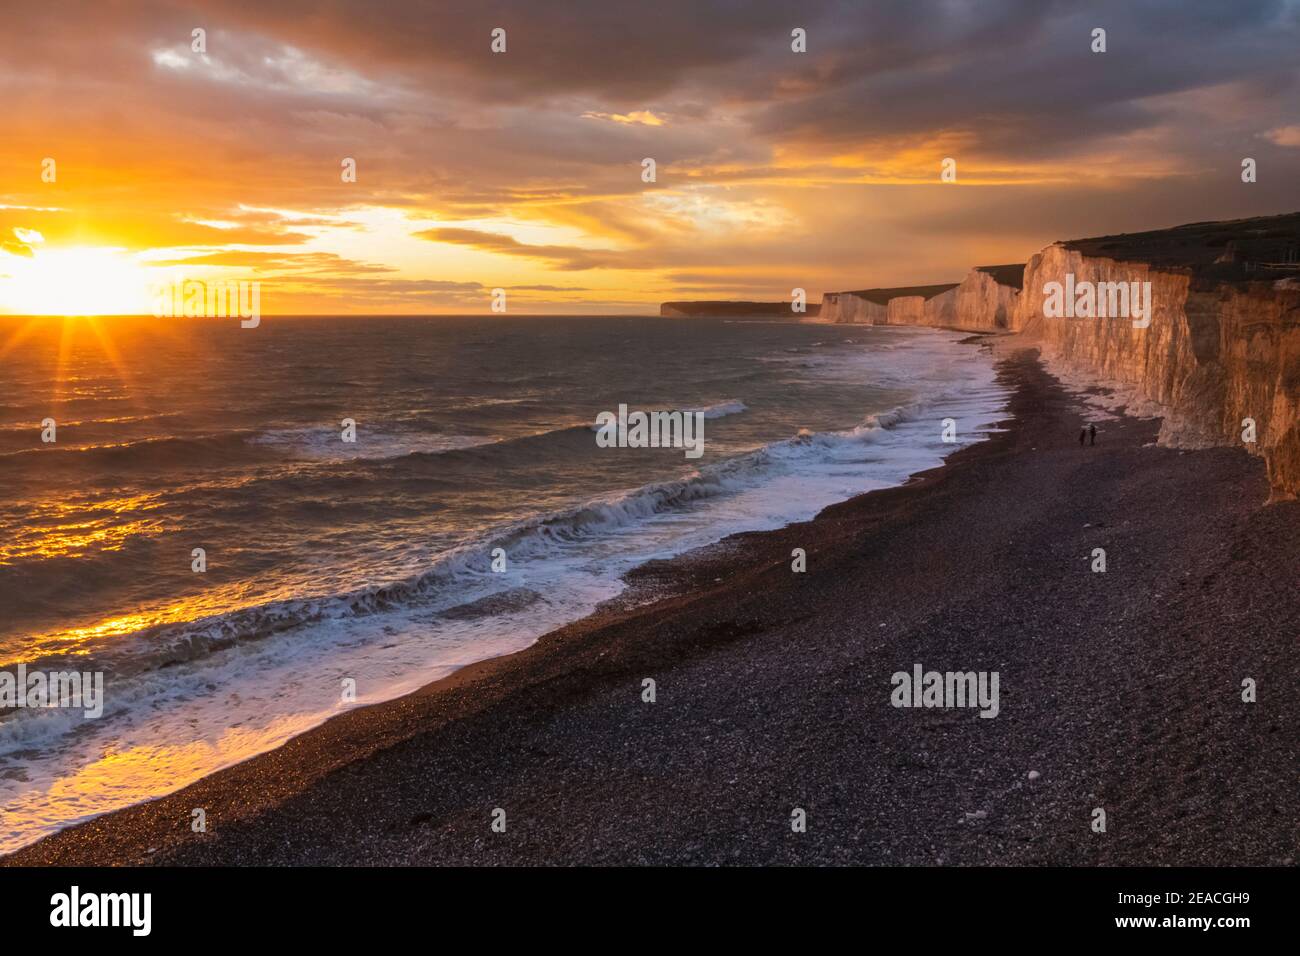 Inghilterra, East Sussex, Eastbourne, Birling Gap, le sette Sorelle Cliffs e la spiaggia nella luce del tardo pomeriggio Foto Stock